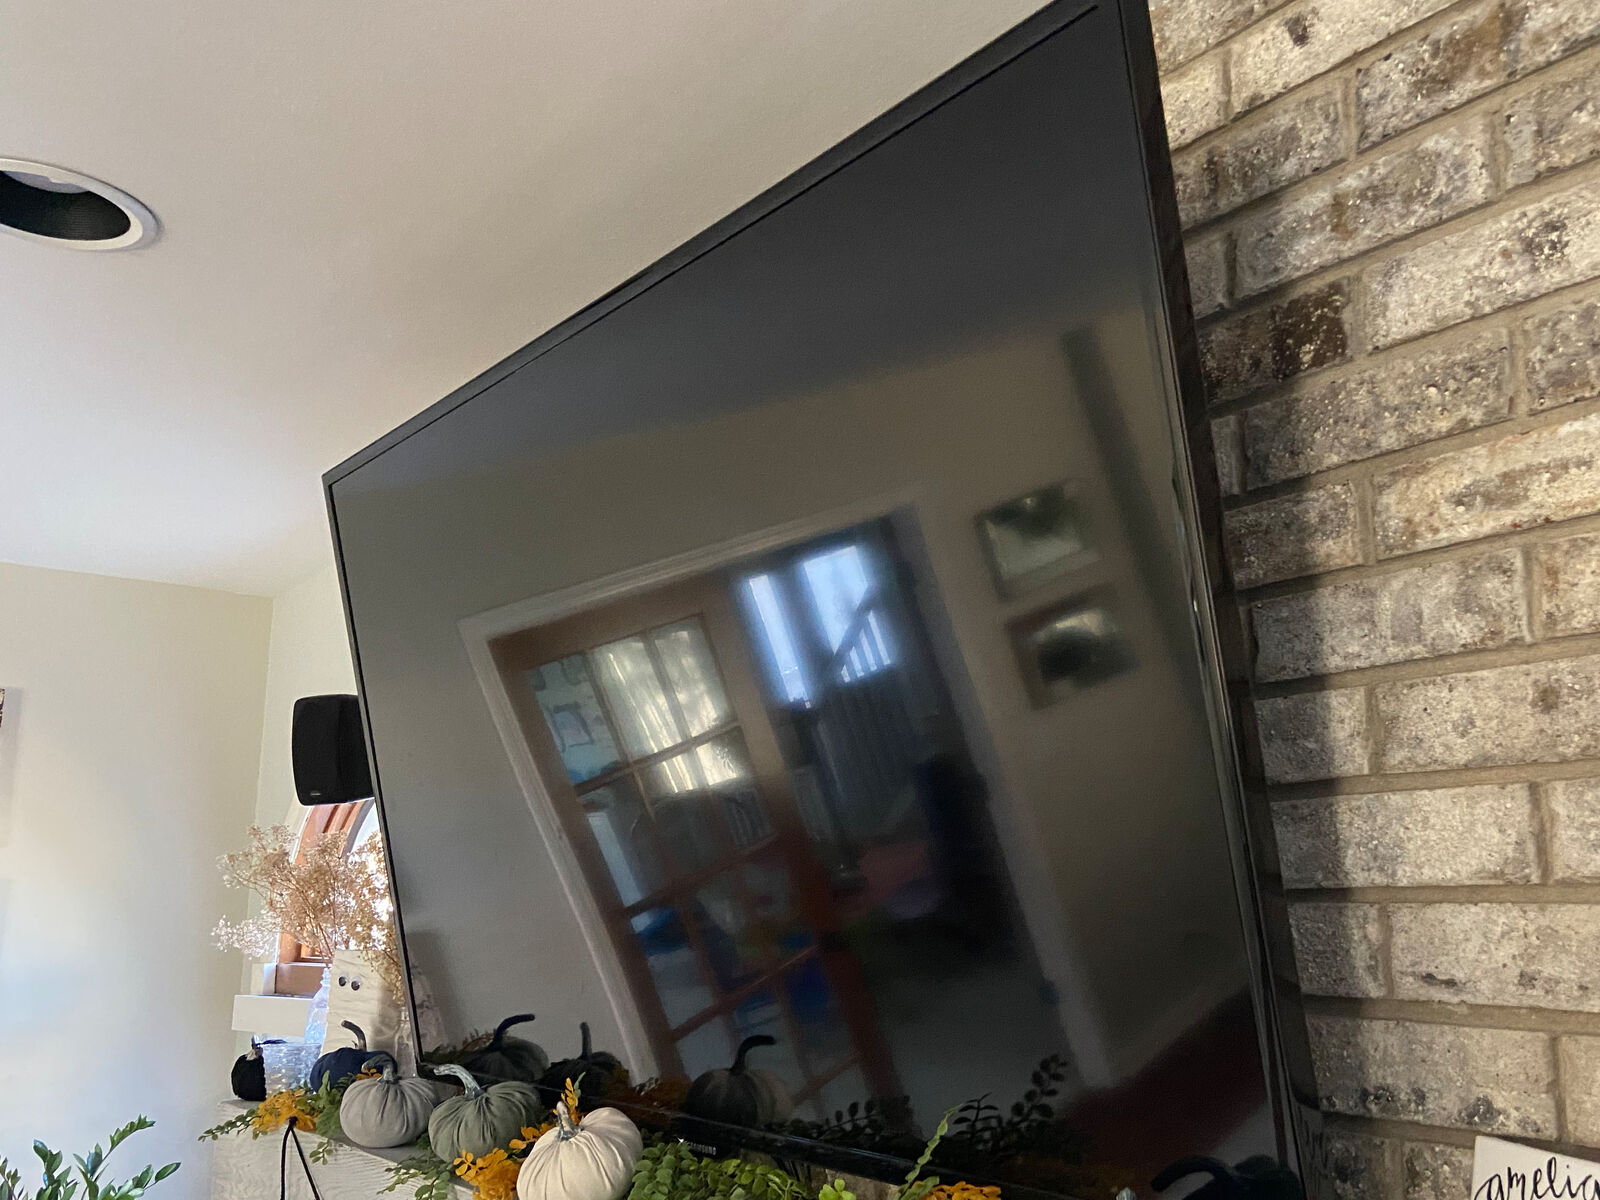 TV mounted to masonry above a fireplace